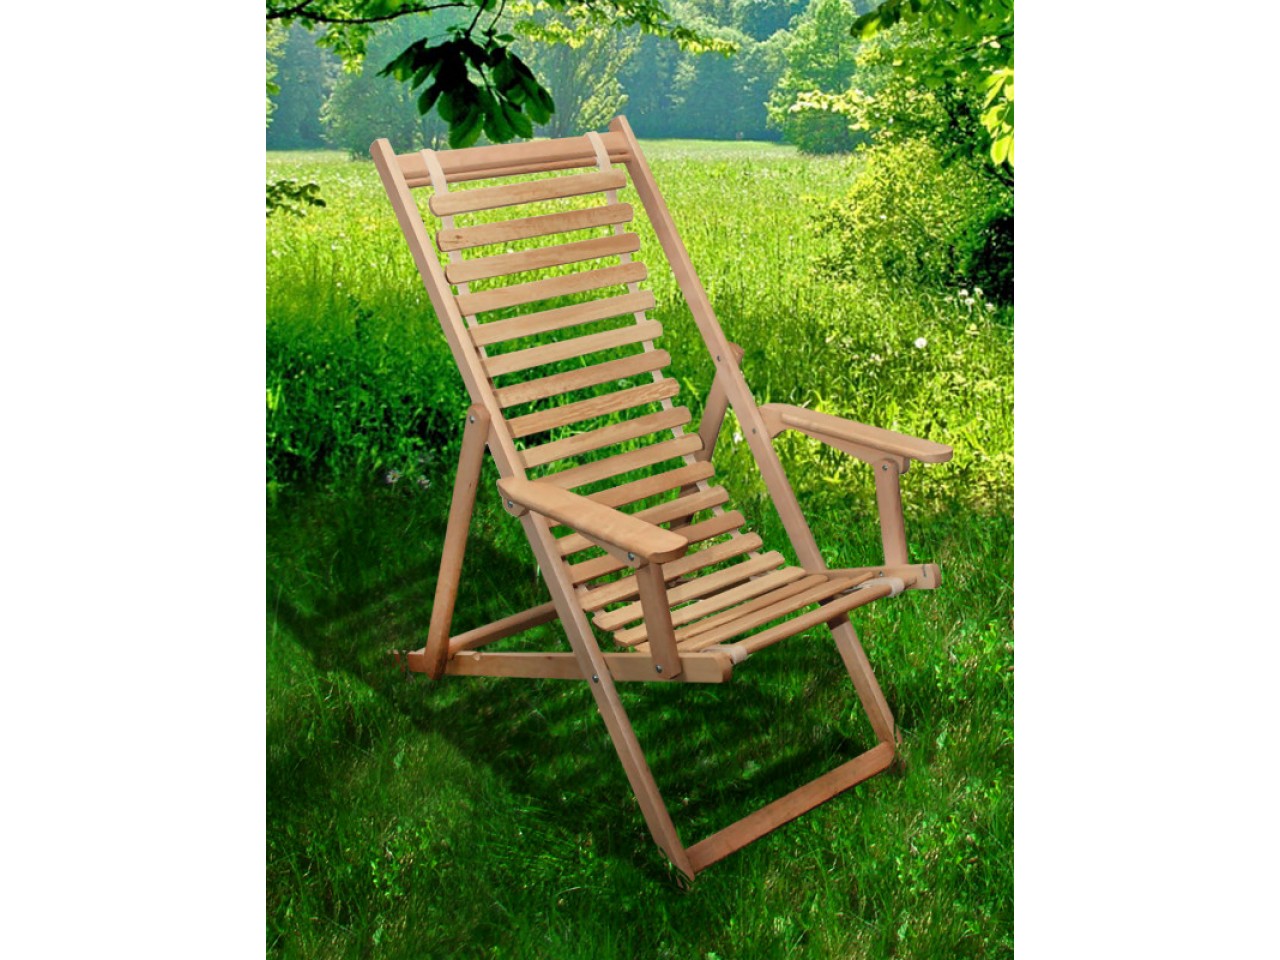 Садовое кресло шезлонг раскладное деревянное с тканью